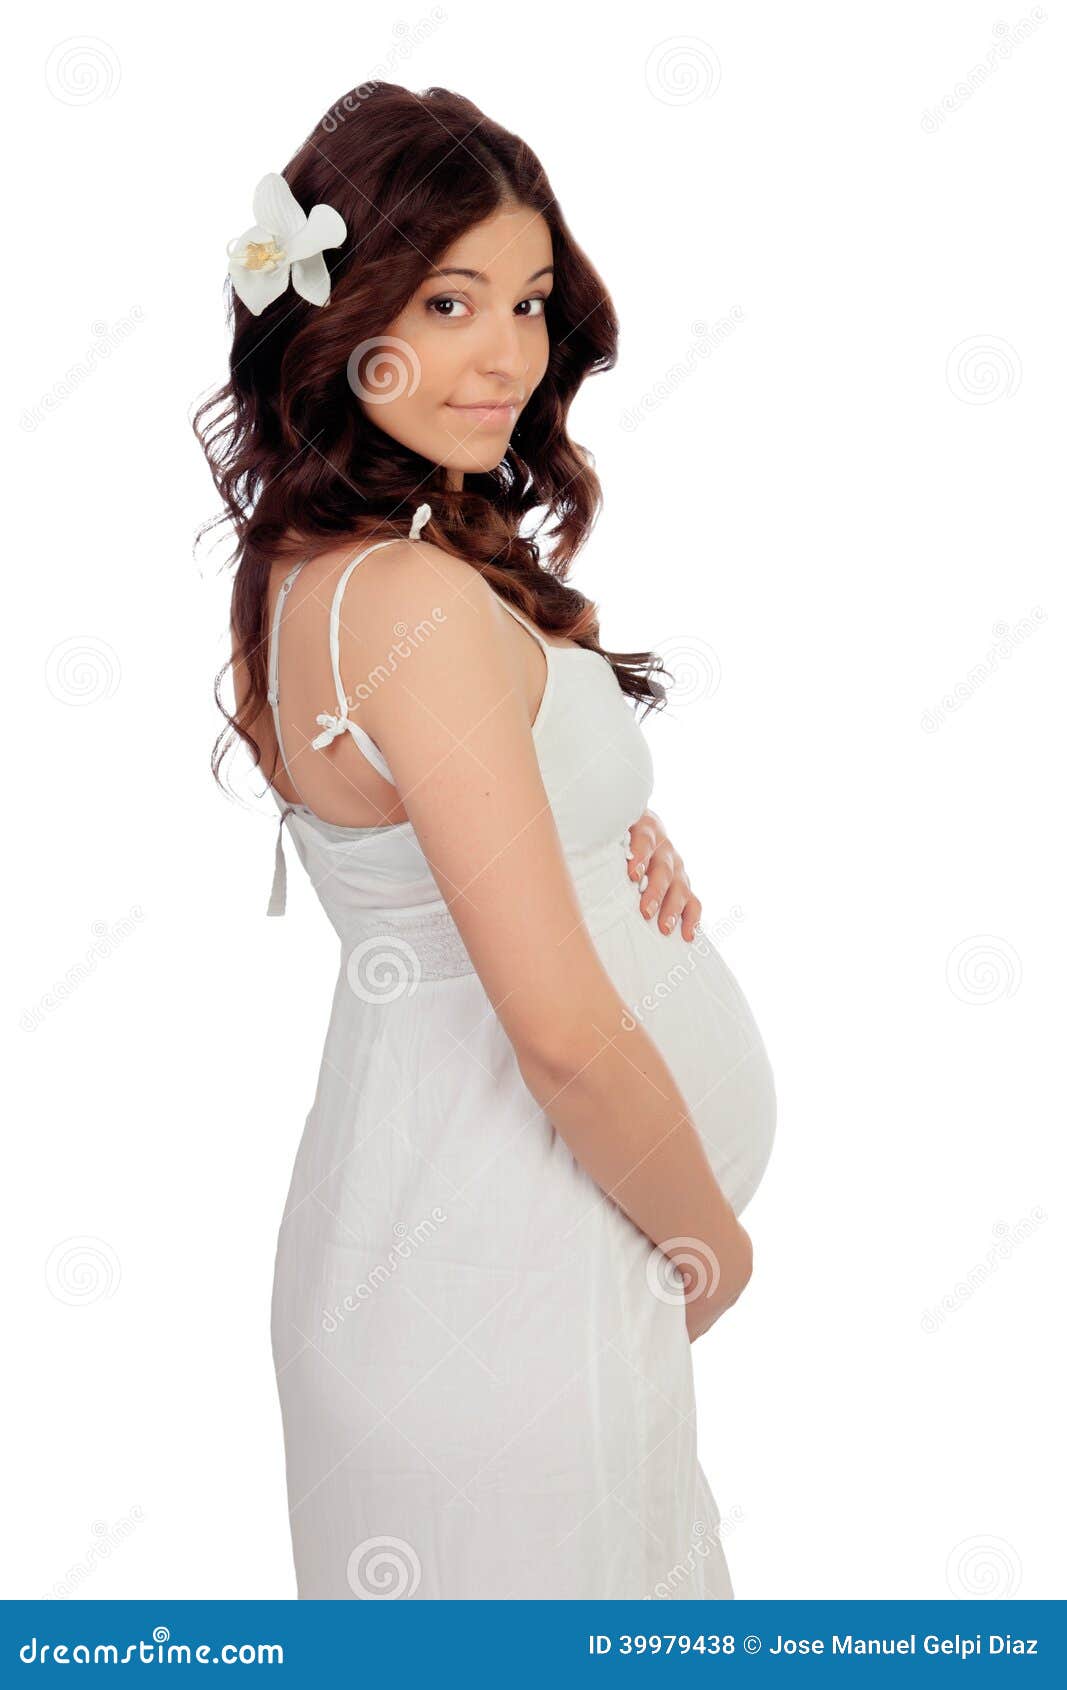 Lovely Pregnant 24